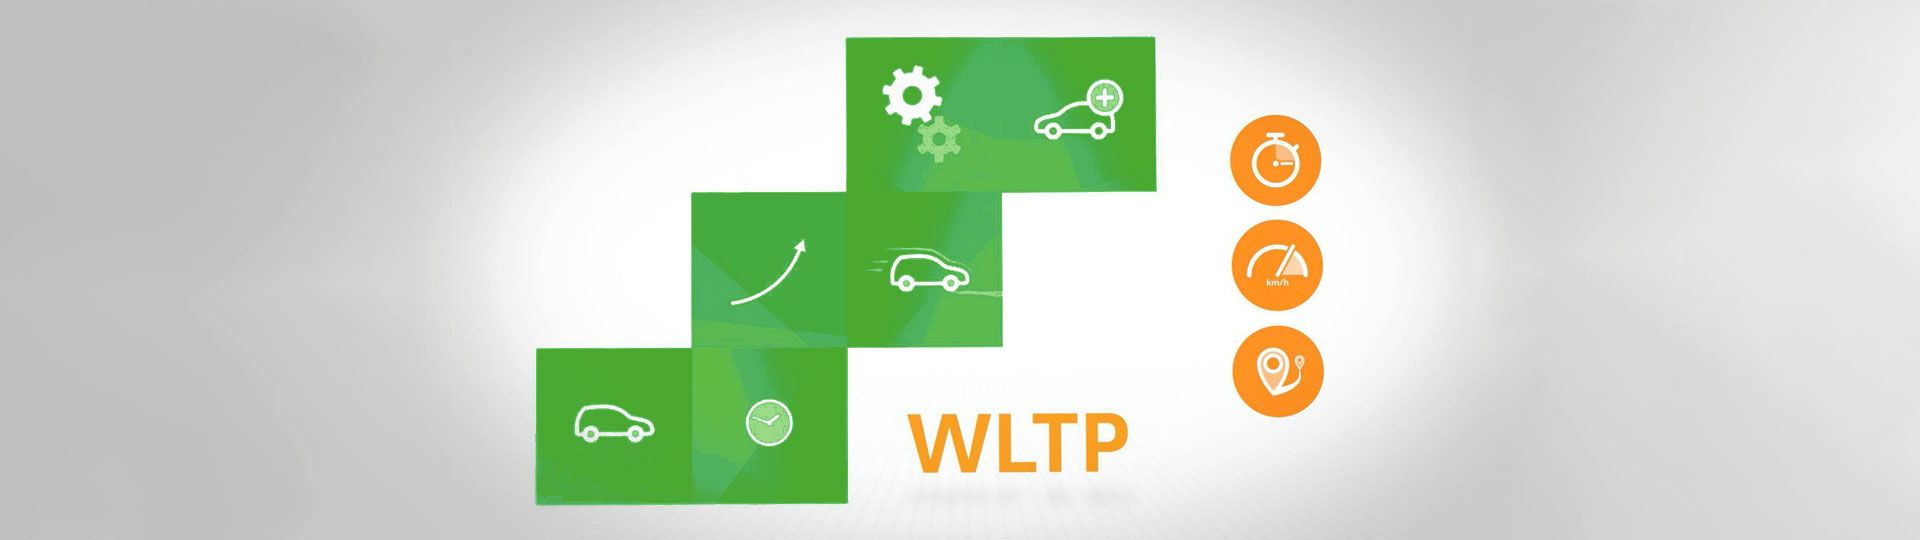 Wat is de WLTP?